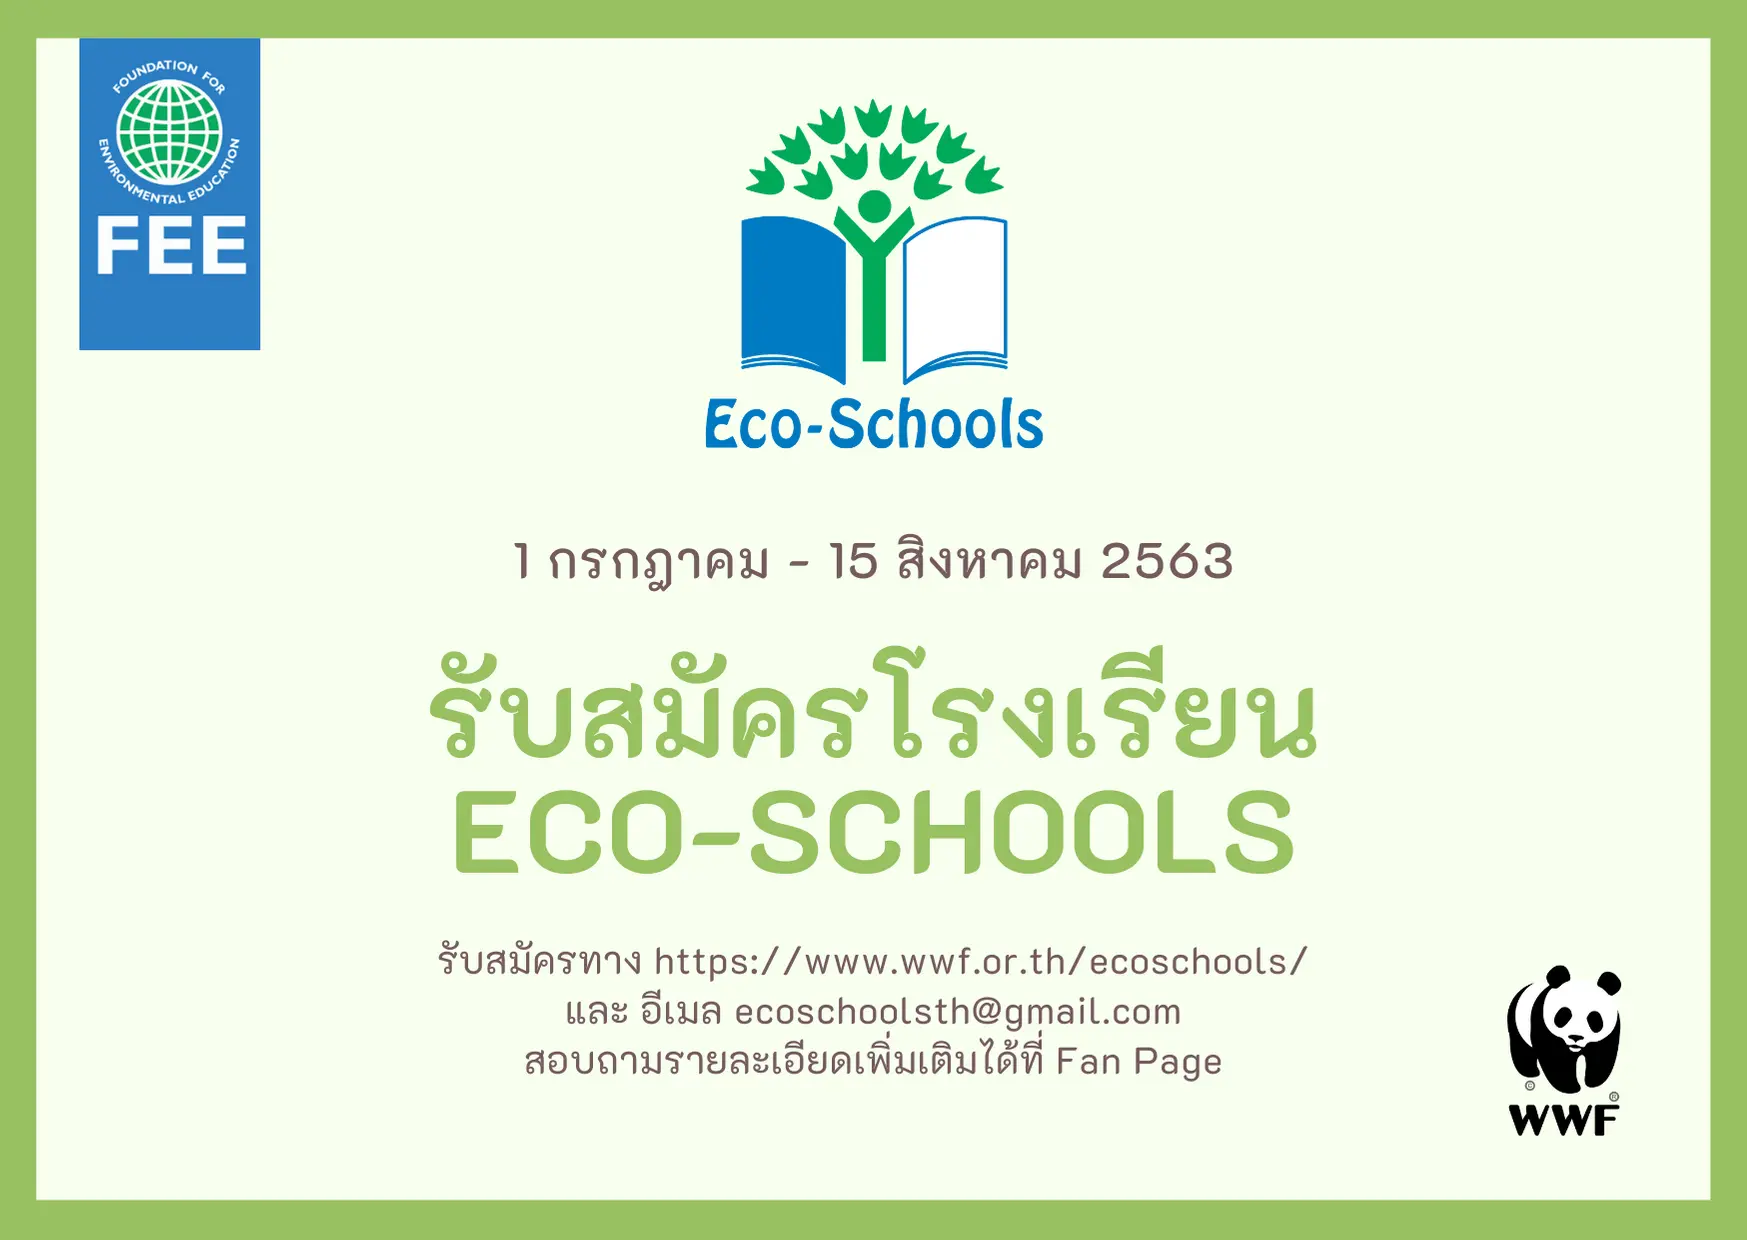 WWF เปิดรับสมัครโรงเรียนเข้าโครงการ ECO SCHOOLS รับสมัคร 1 กรกฎาคม - 15 สิงหาคม 2563